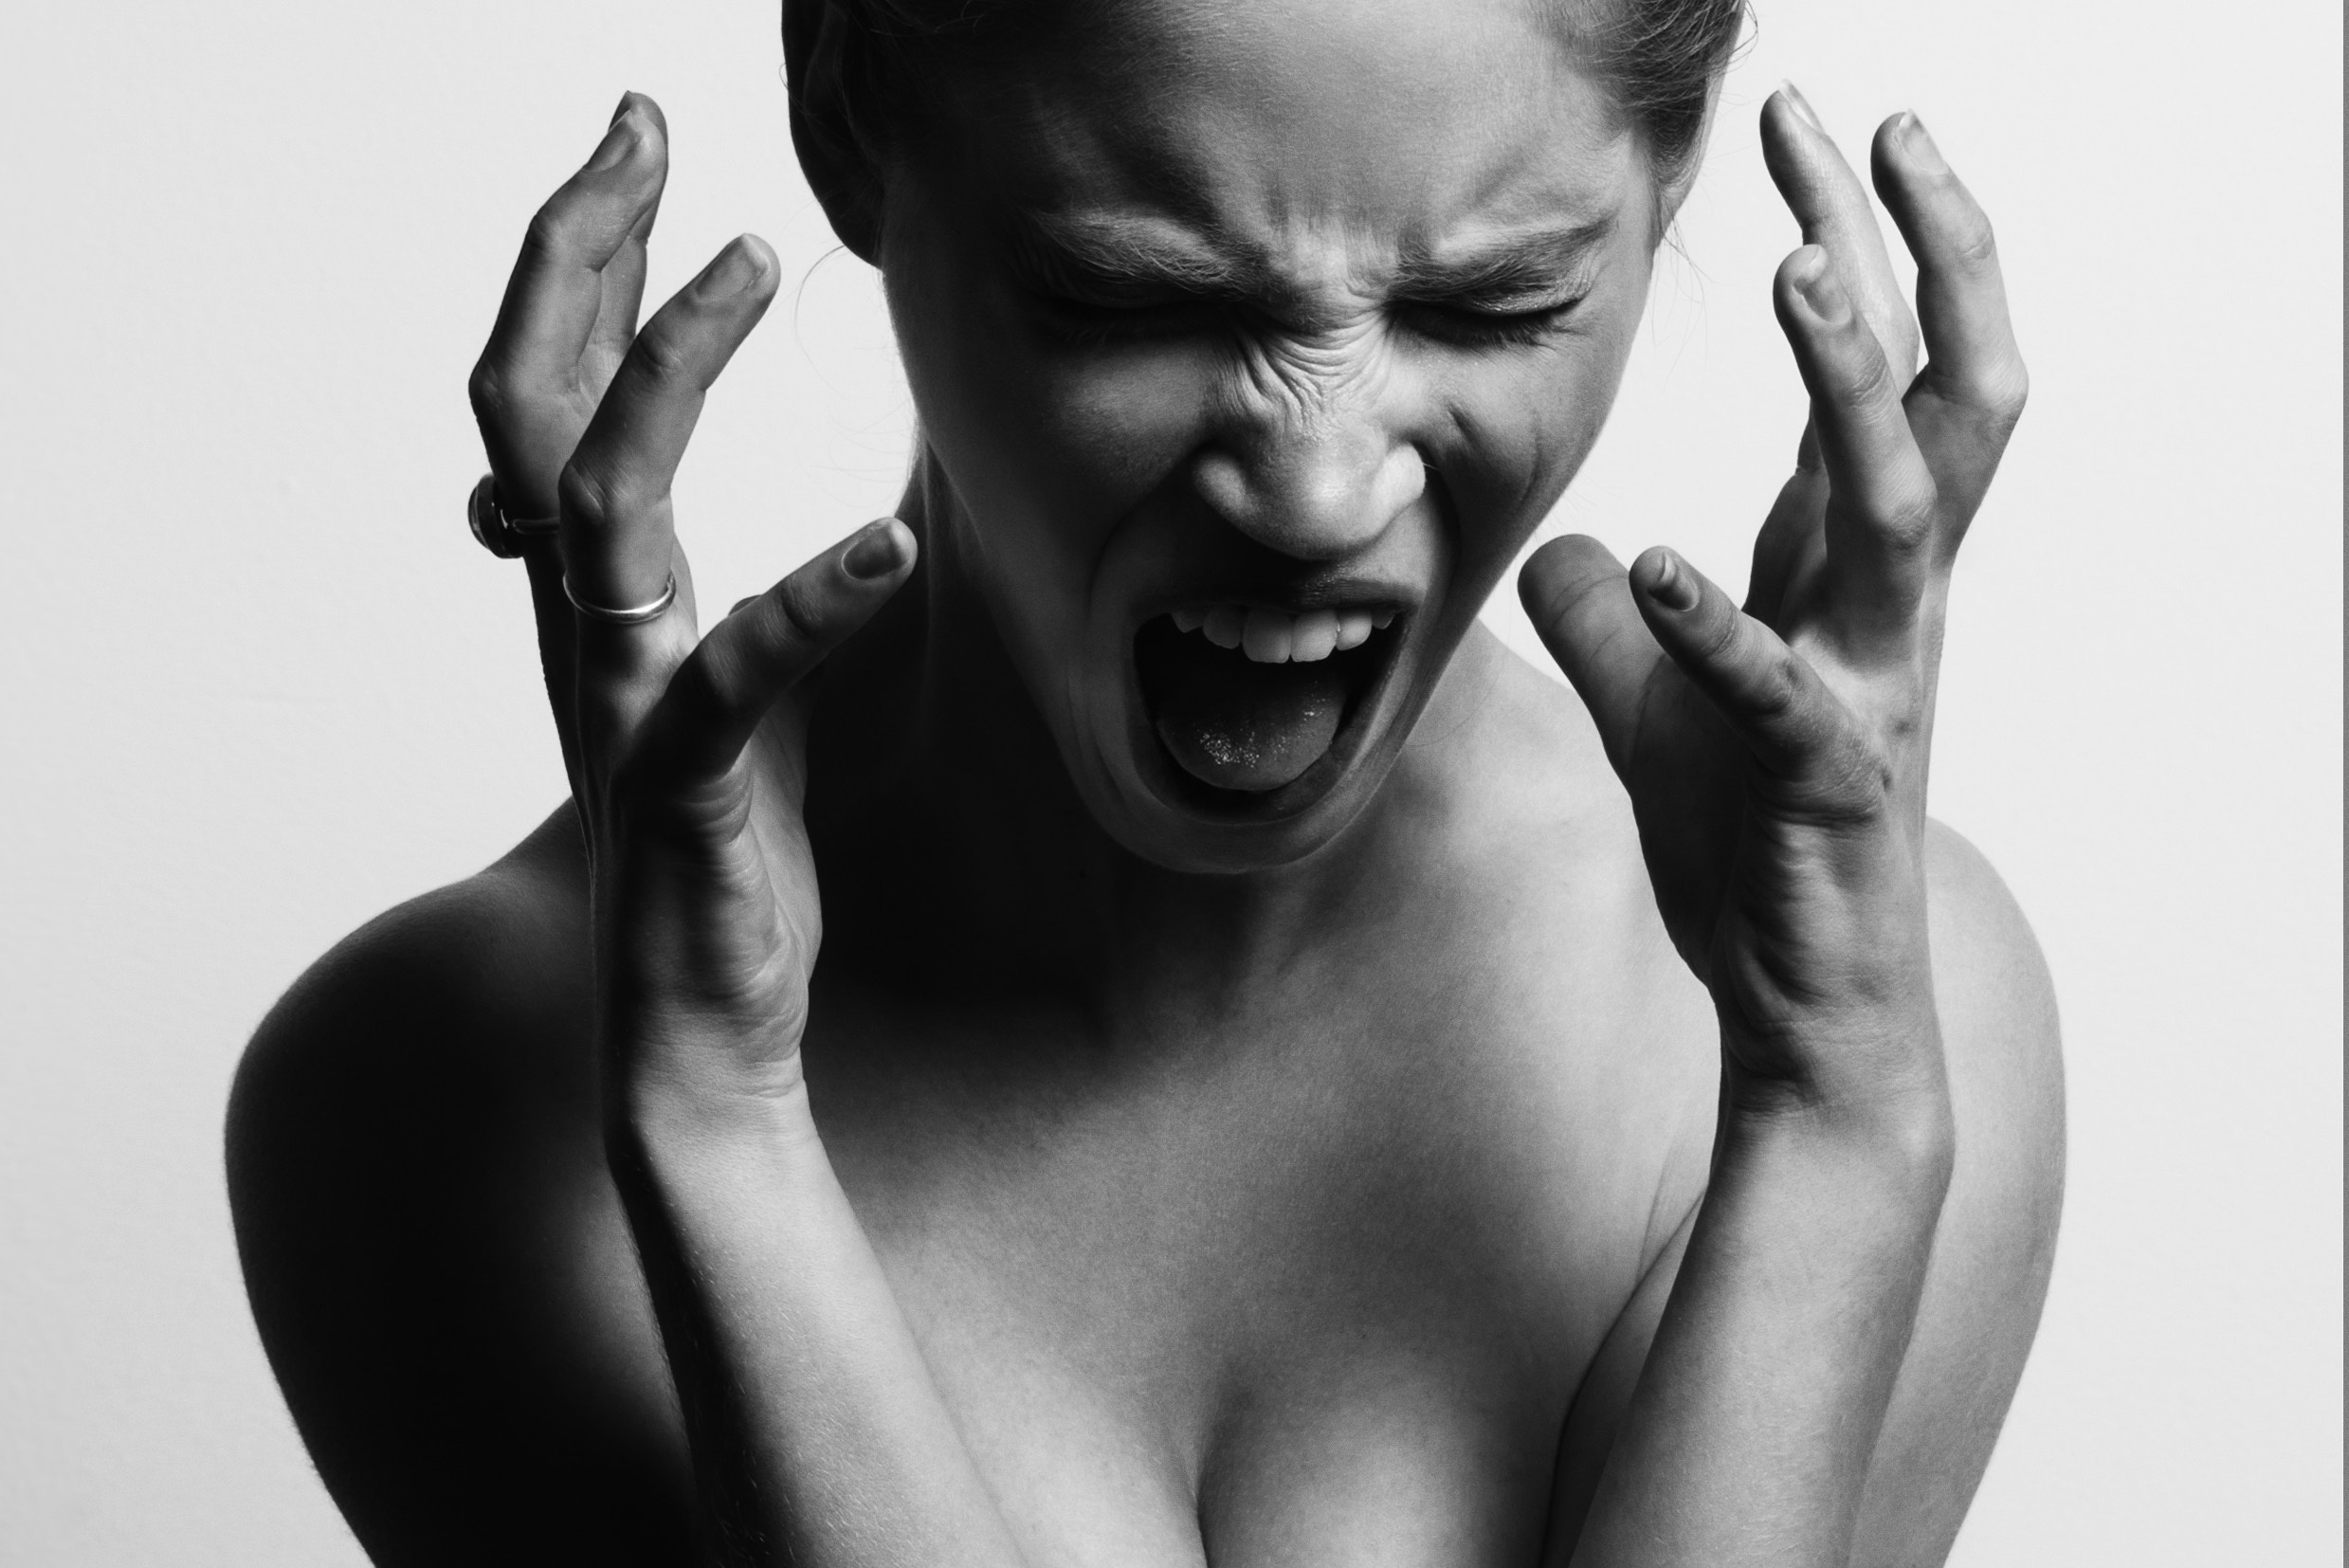 women in stress, screaming